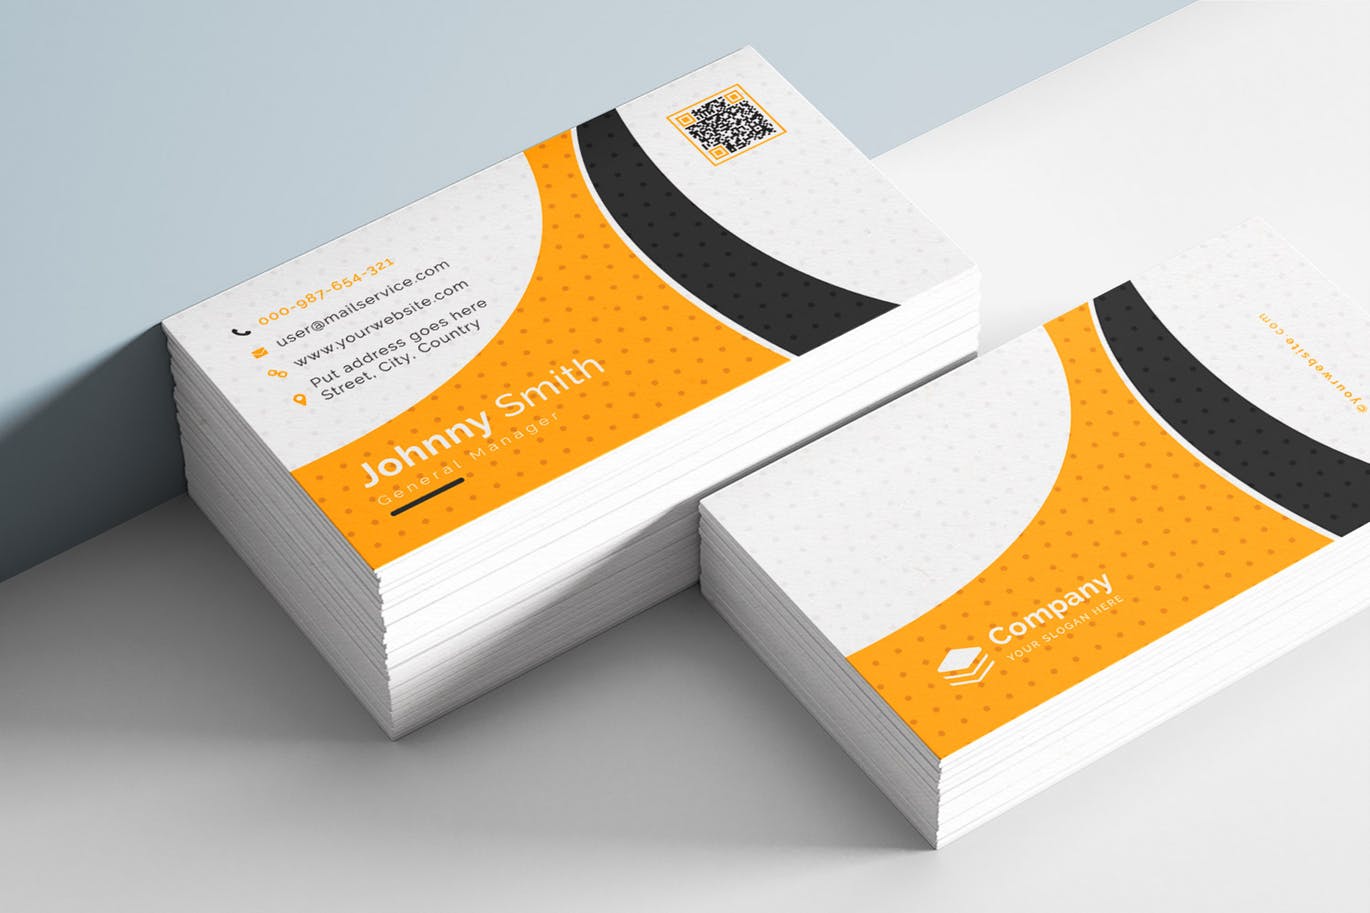 等距圆点三色设计风格企业素材库精选名片模板 Business Card插图(3)